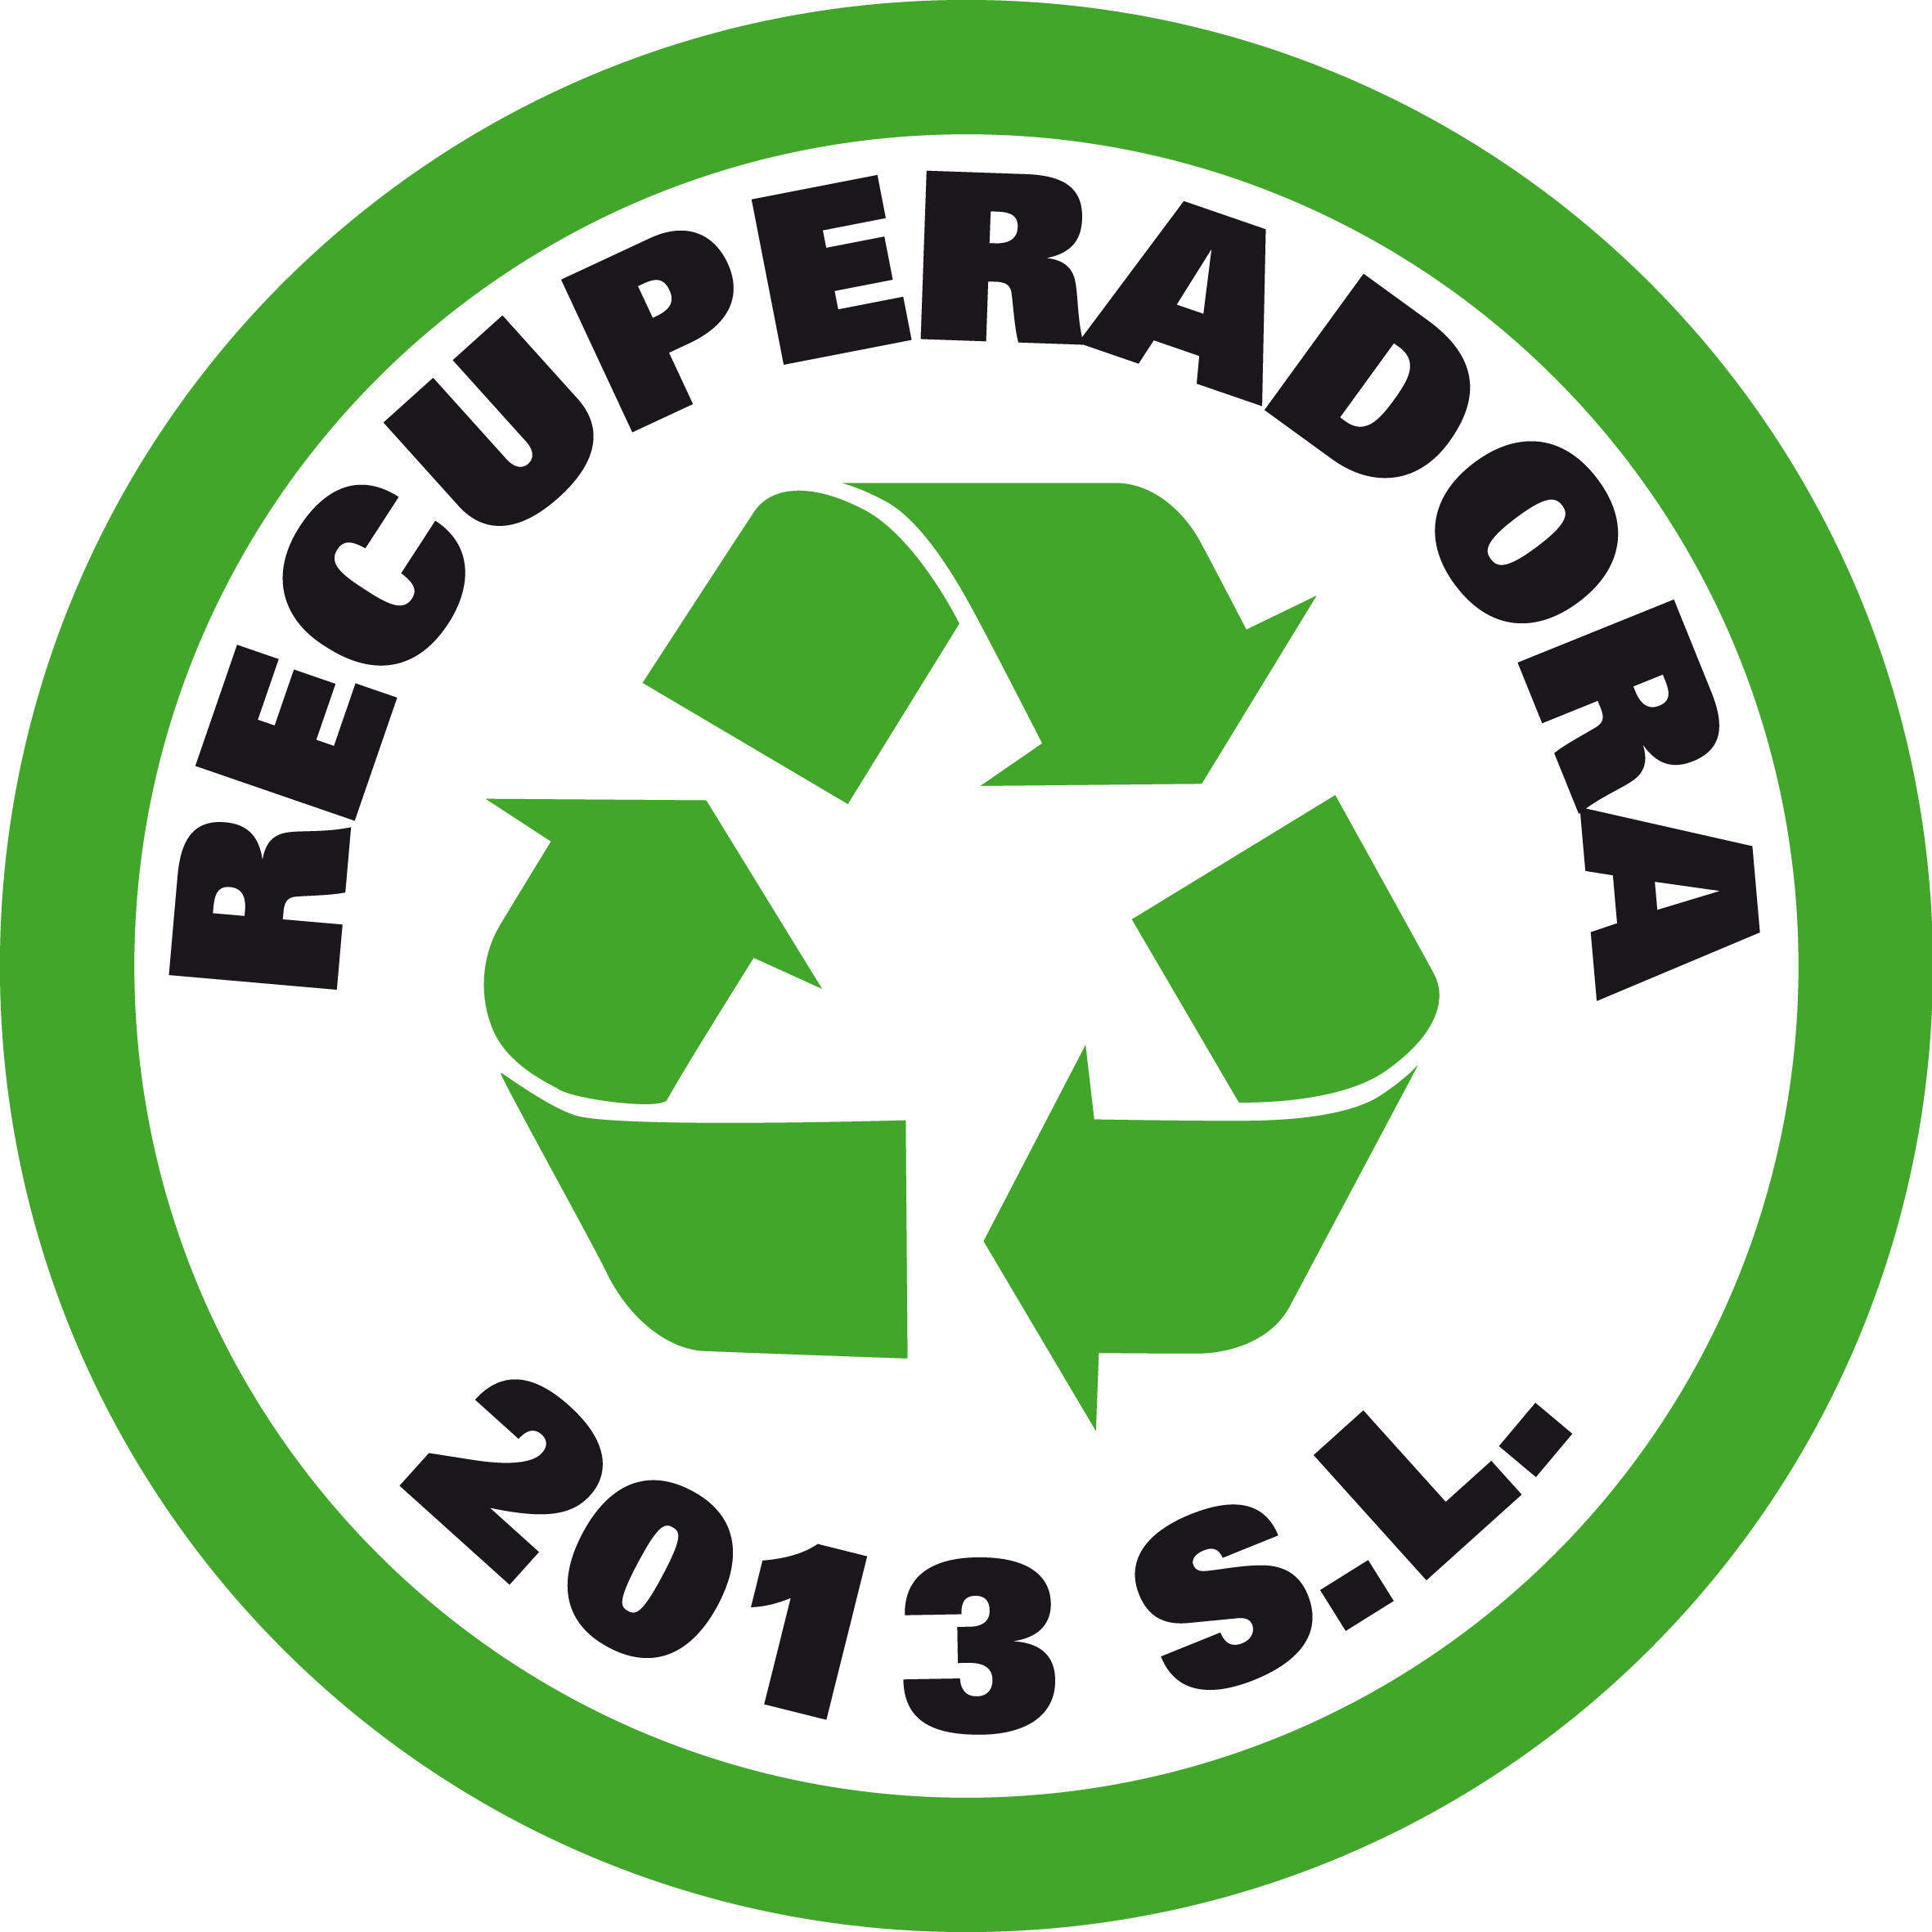 Chatarrería Recuperadora 2013 Logo